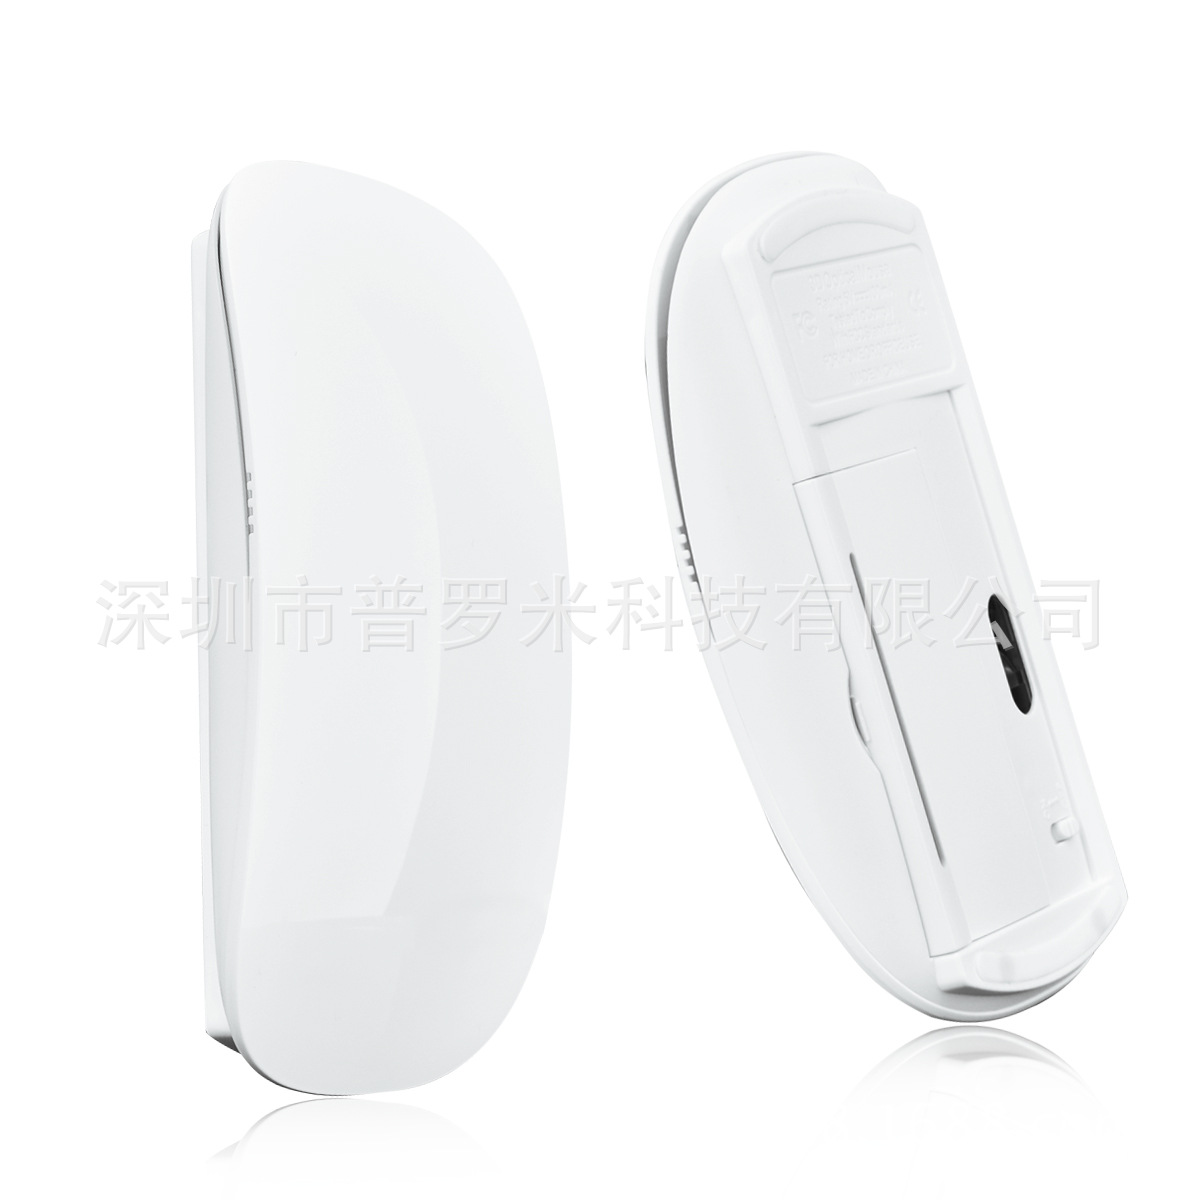 2.4G无线鼠标触摸鼠标超薄触控鼠标  新款平板触摸鼠标 MF-823示例图117